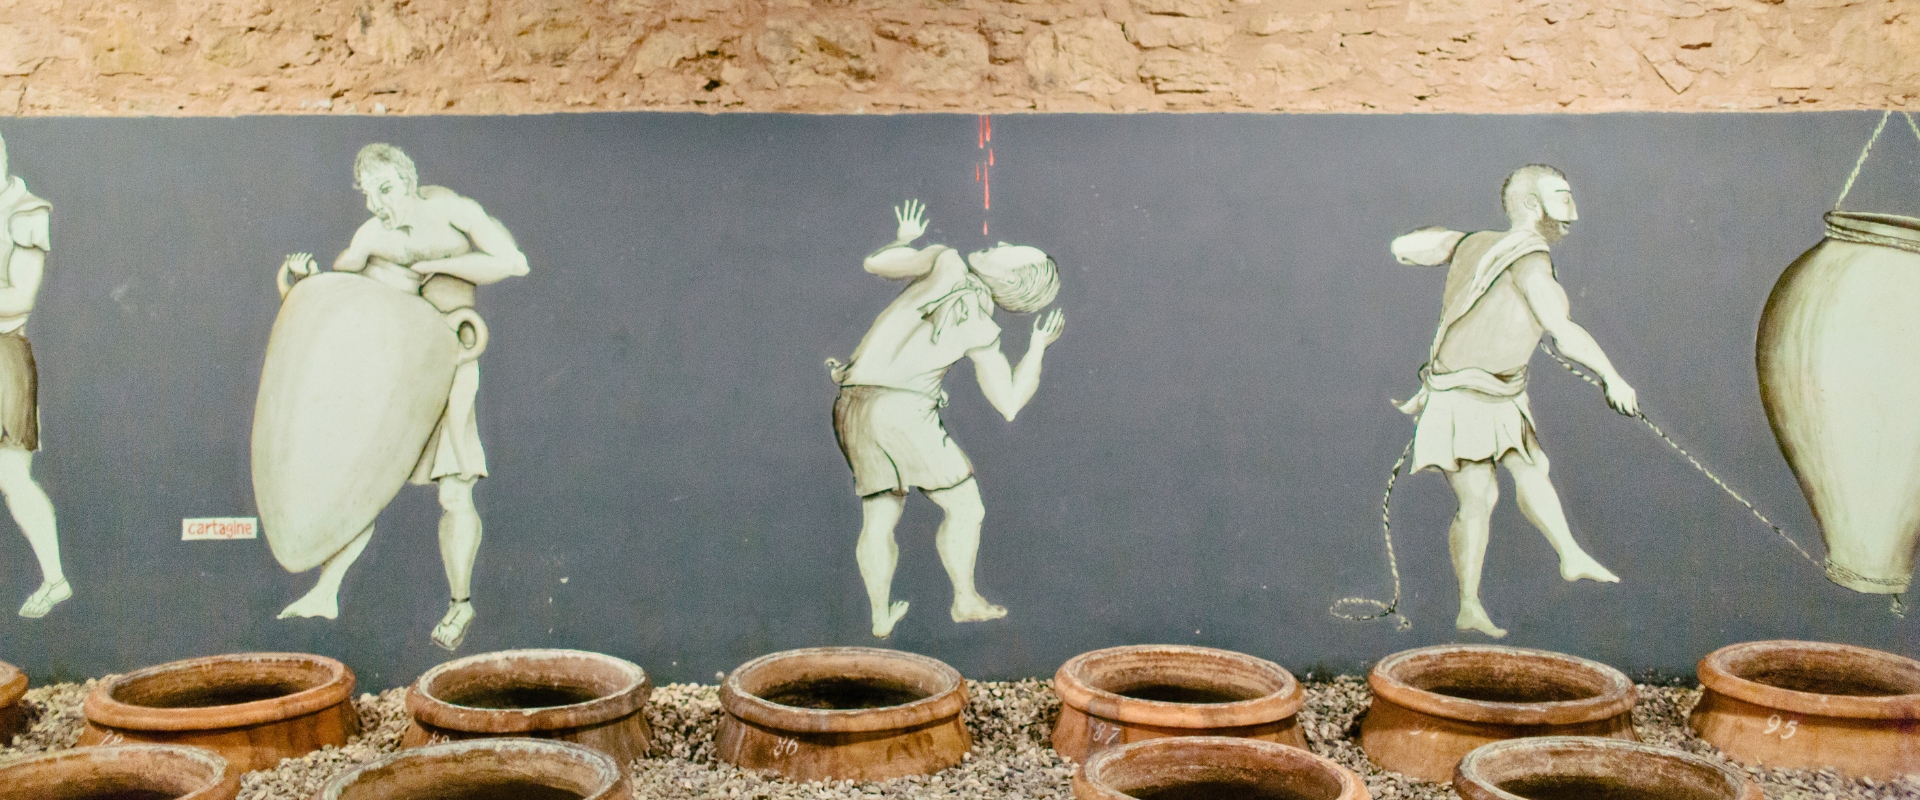 Wine in amphora in Sicily